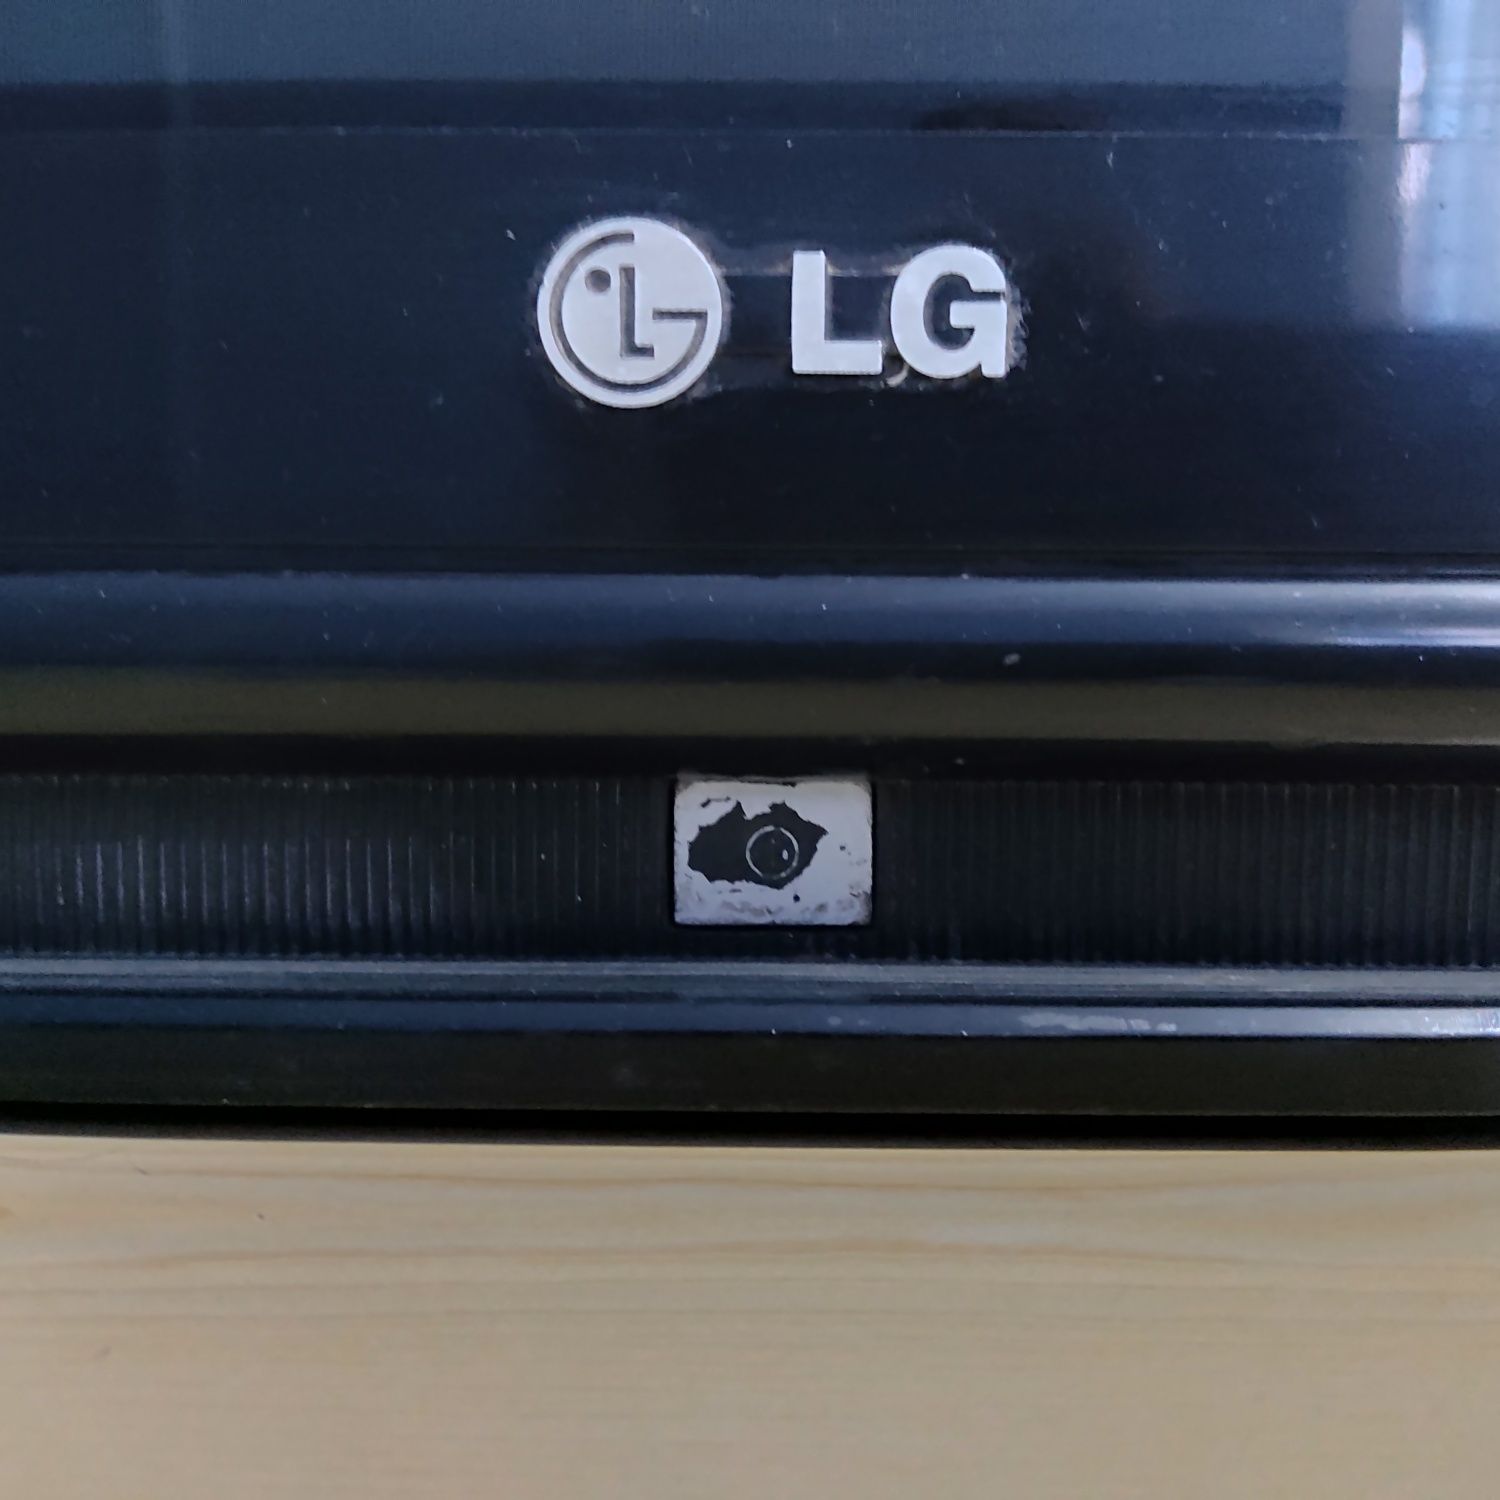 Телевизор LG. 400000